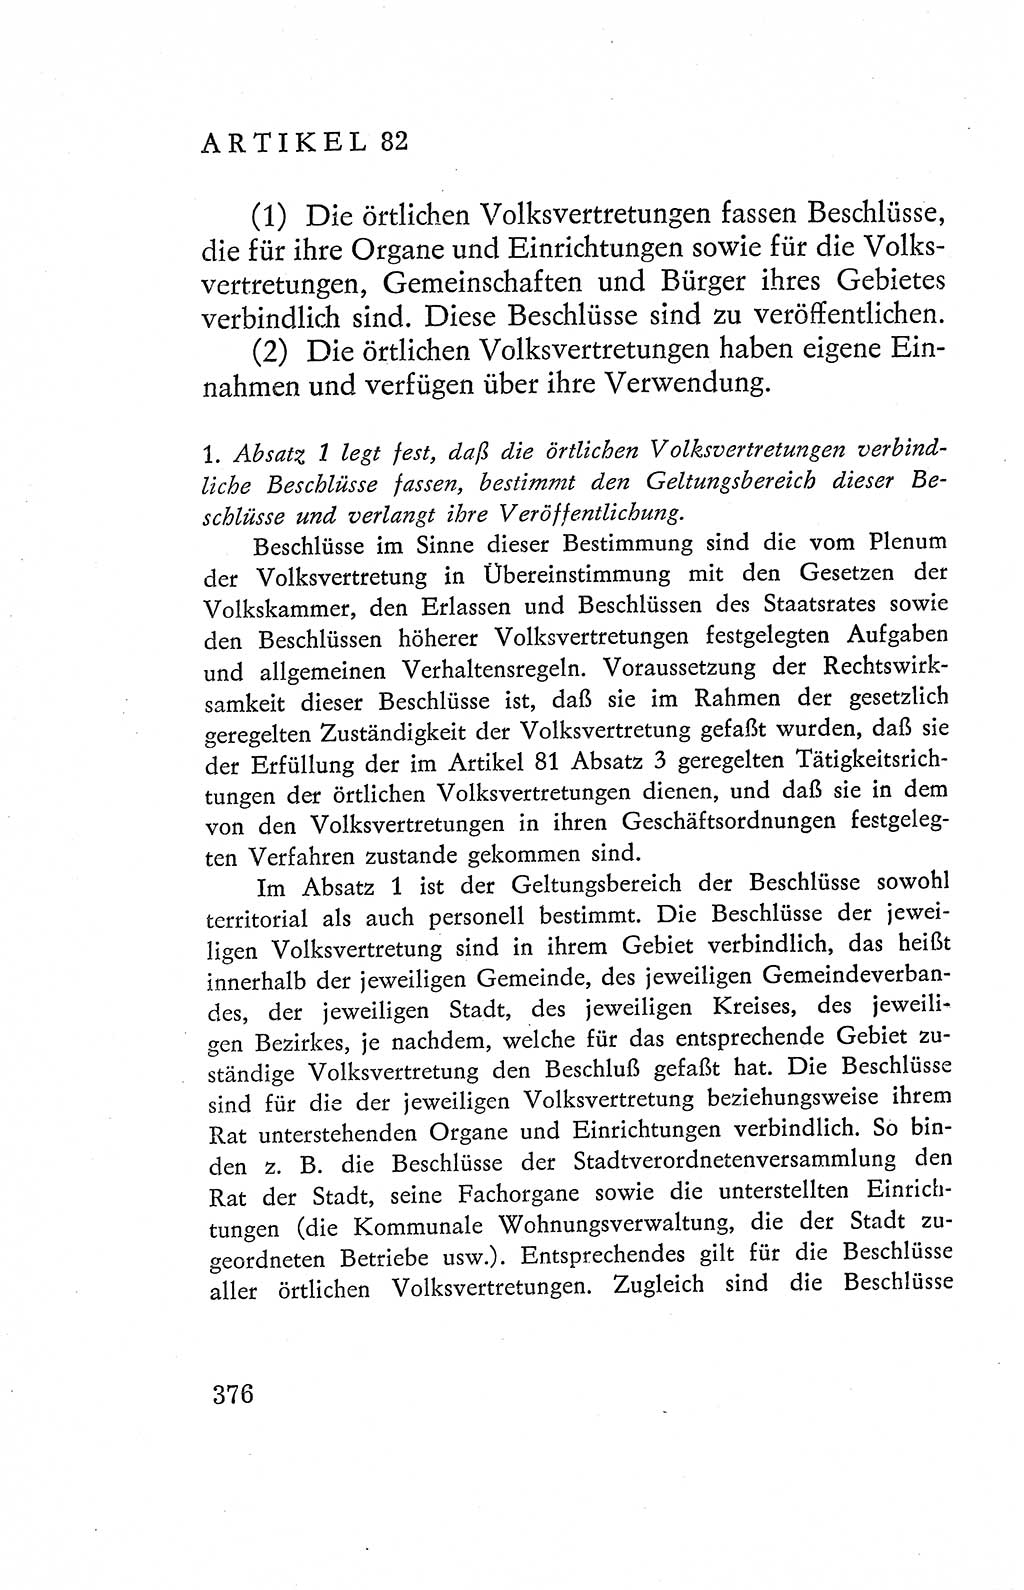 Verfassung der Deutschen Demokratischen Republik (DDR), Dokumente, Kommentar 1969, Band 2, Seite 376 (Verf. DDR Dok. Komm. 1969, Bd. 2, S. 376)